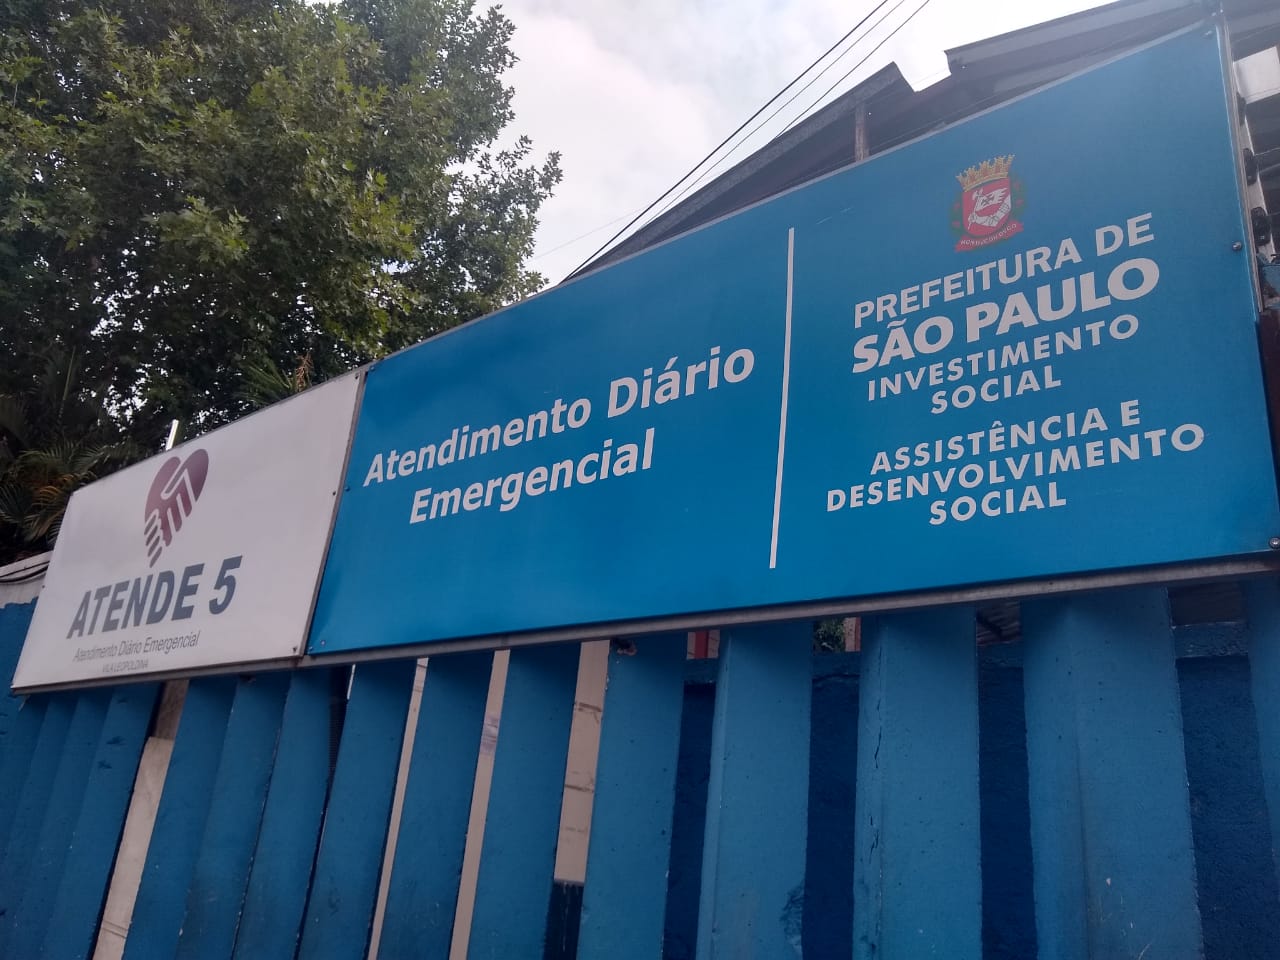 Imagem da placa do serviço na parte externa do local. A placa azul contem as seguintes informações: Atendimento Diário Emergencial – Vila Leopoldina e o logo da Prefeitura da cidade de São Paulo, logo embaixo, Assistência e Desenvolvimento Social. 